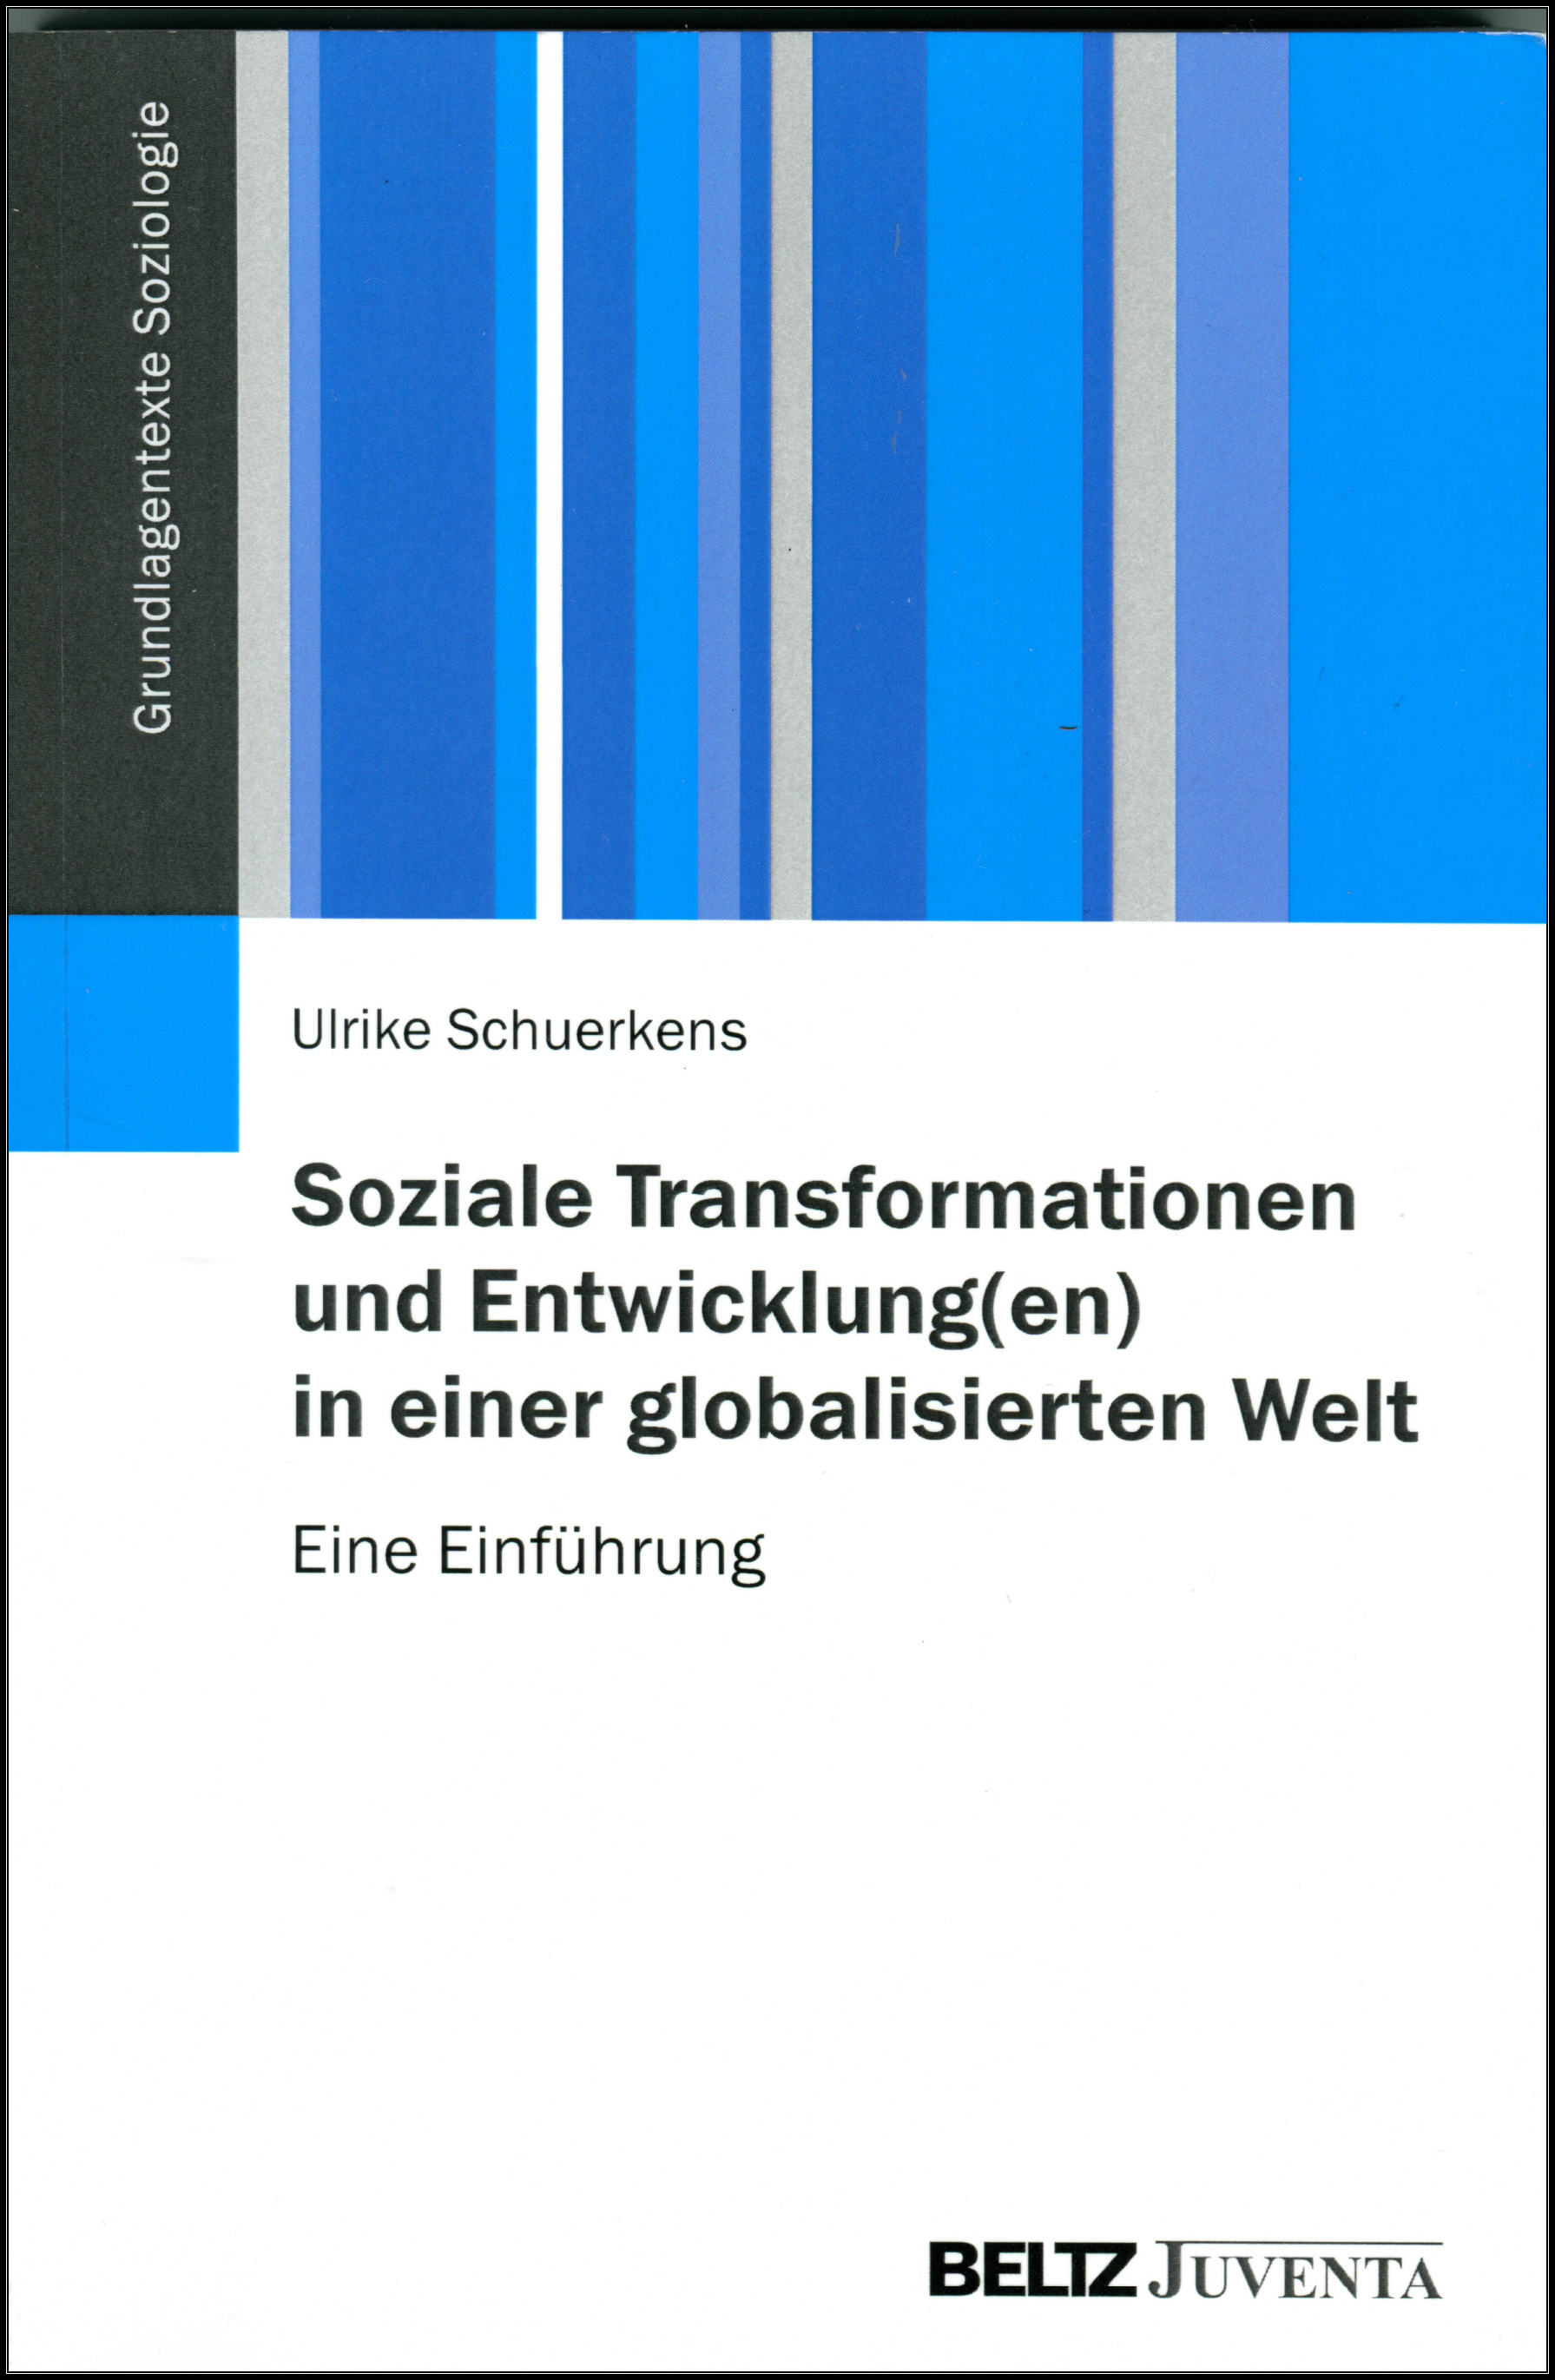 
	<strong>Ulrike SCHUERKENS</strong> (2014): Transformations sociales et développement(s) dans un monde globalisé.